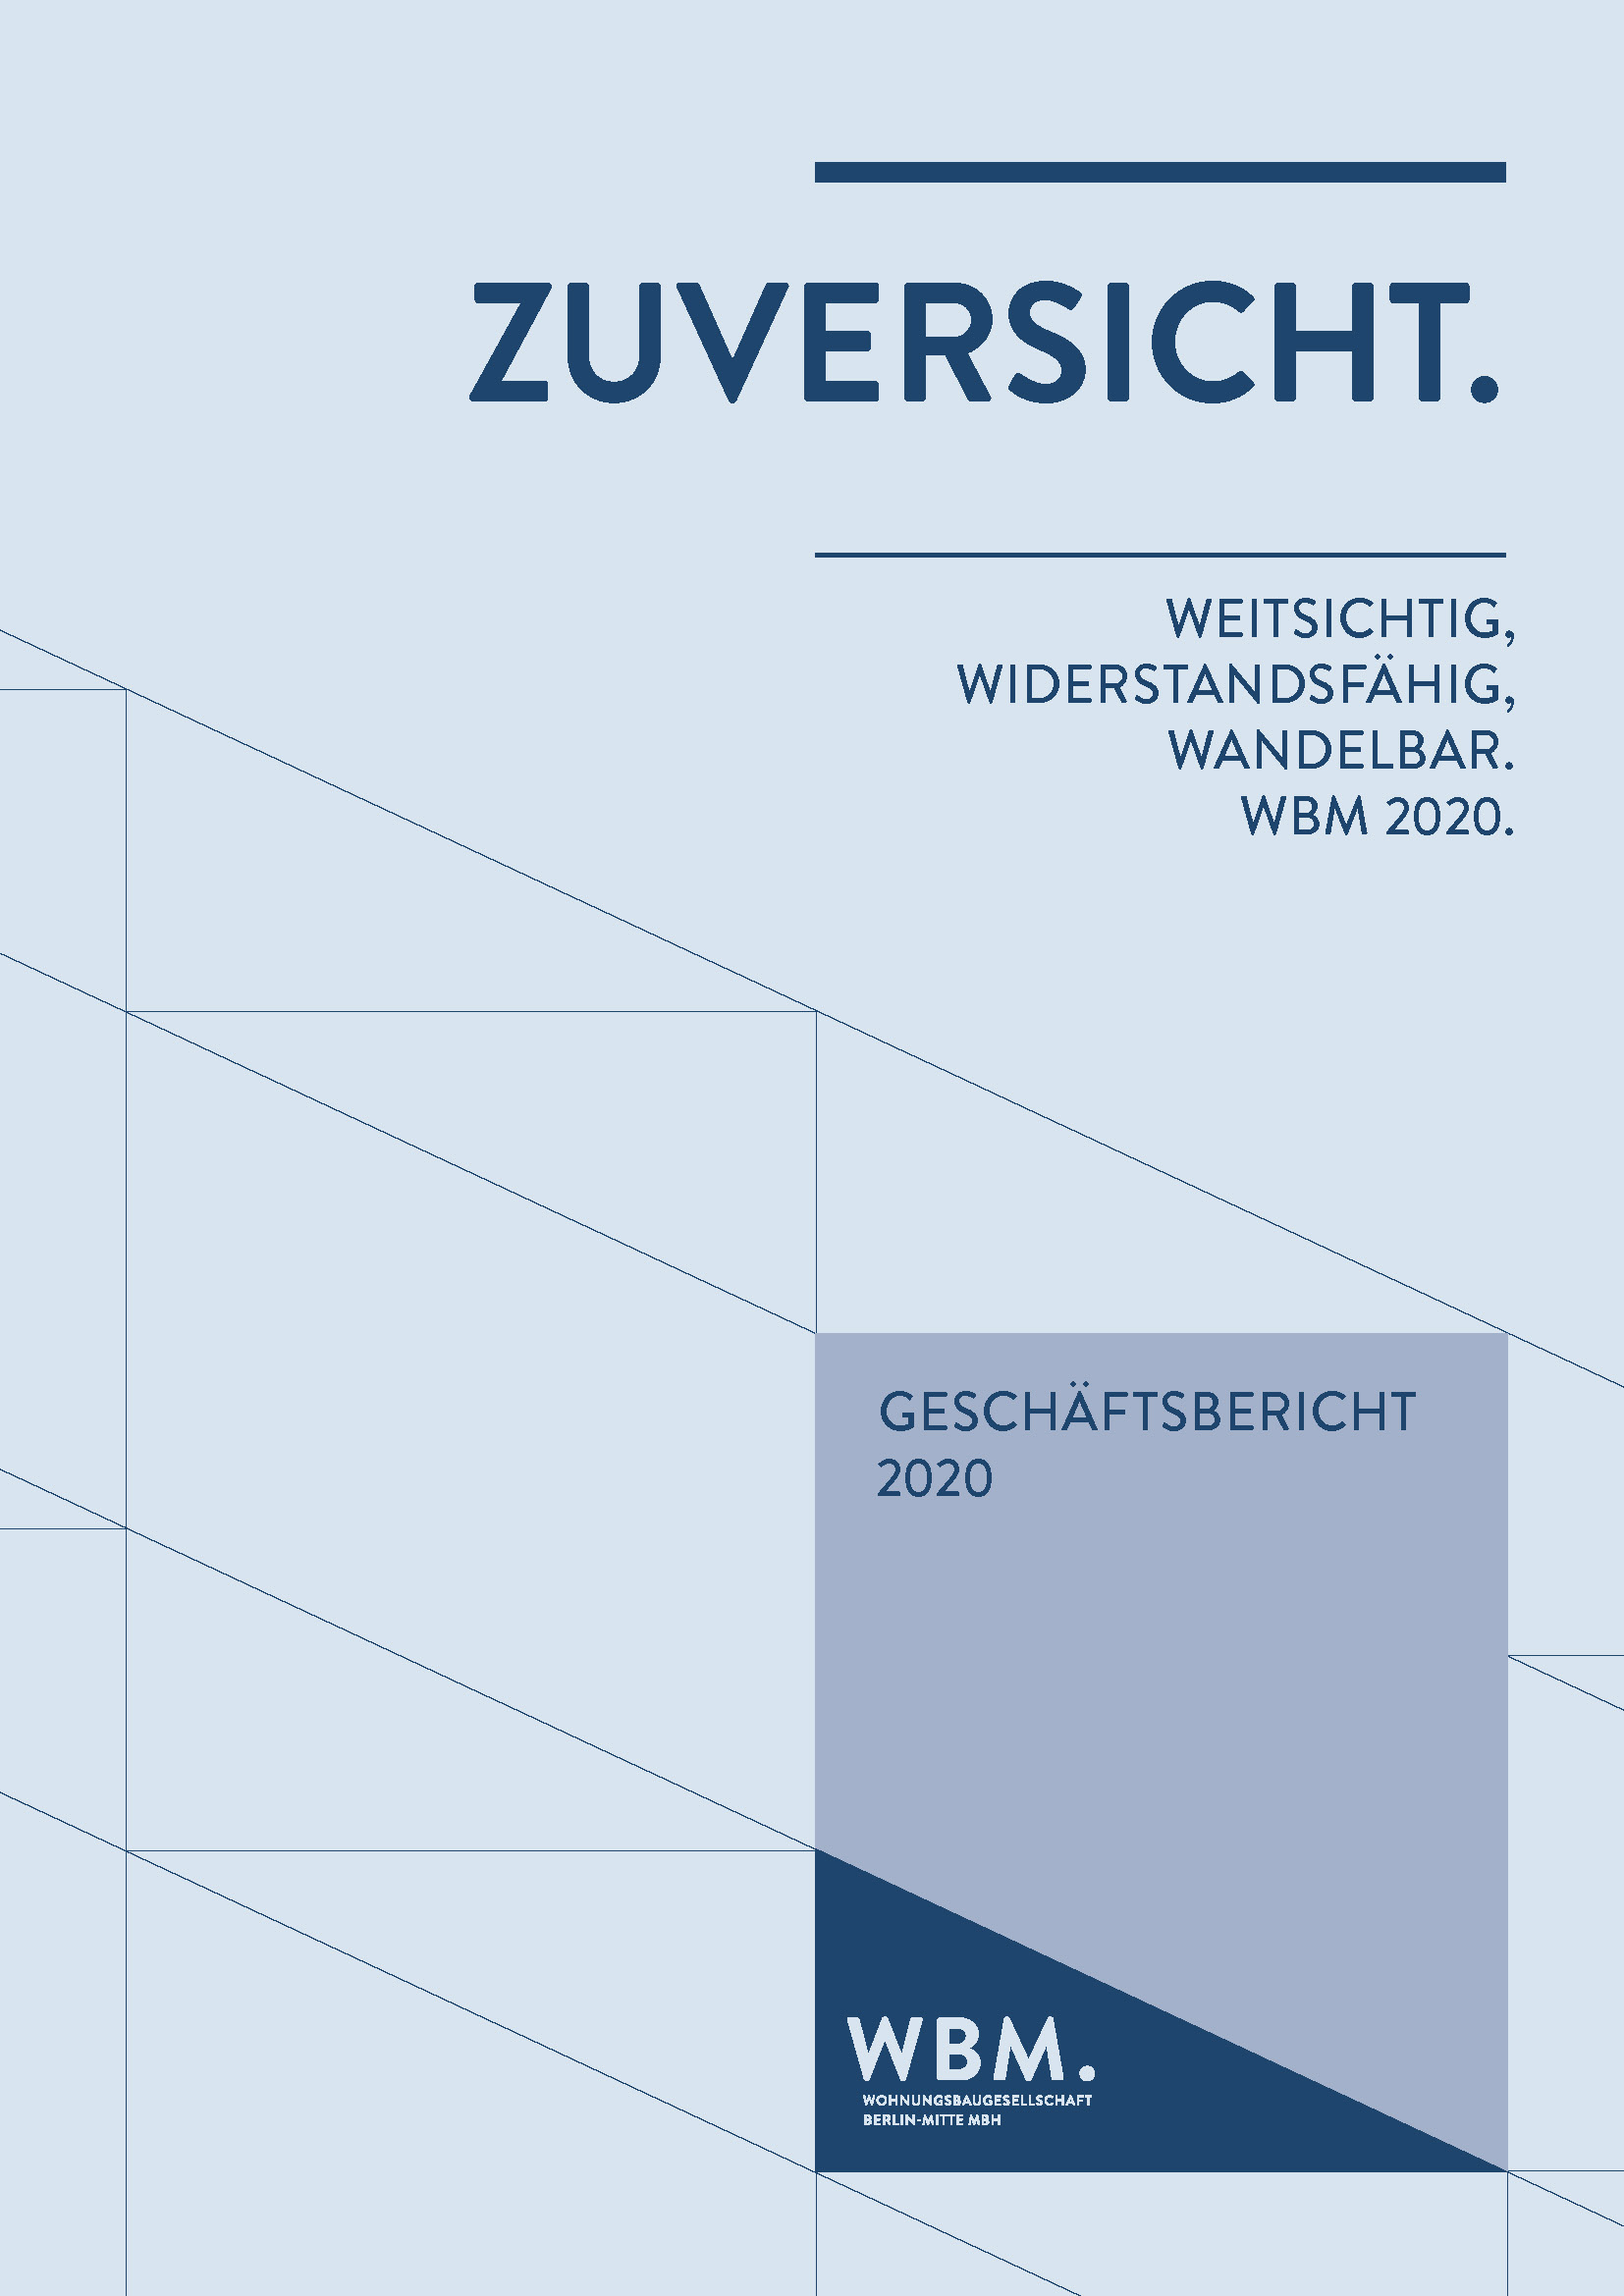 Deckblatt vom WBM-Geschäftsbericht aus 2020